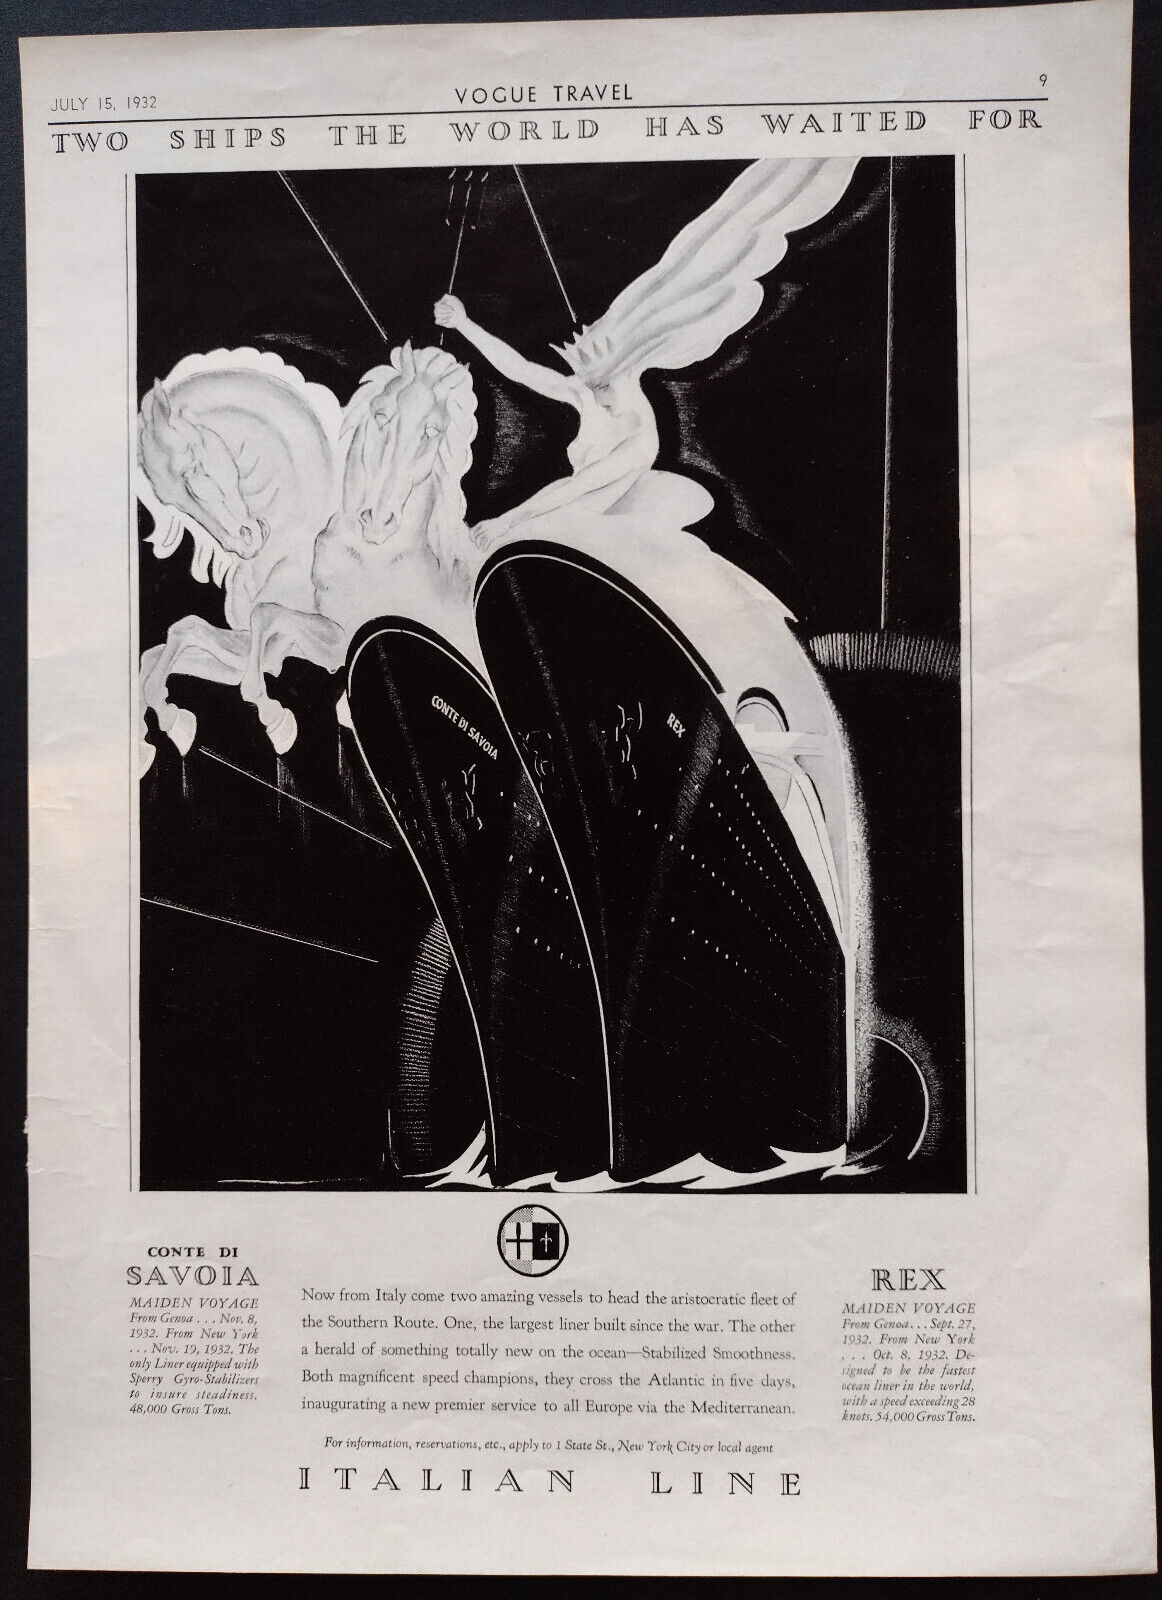 SS Rex & Conte Di Savoia, Italian Line Advertisment, 1932